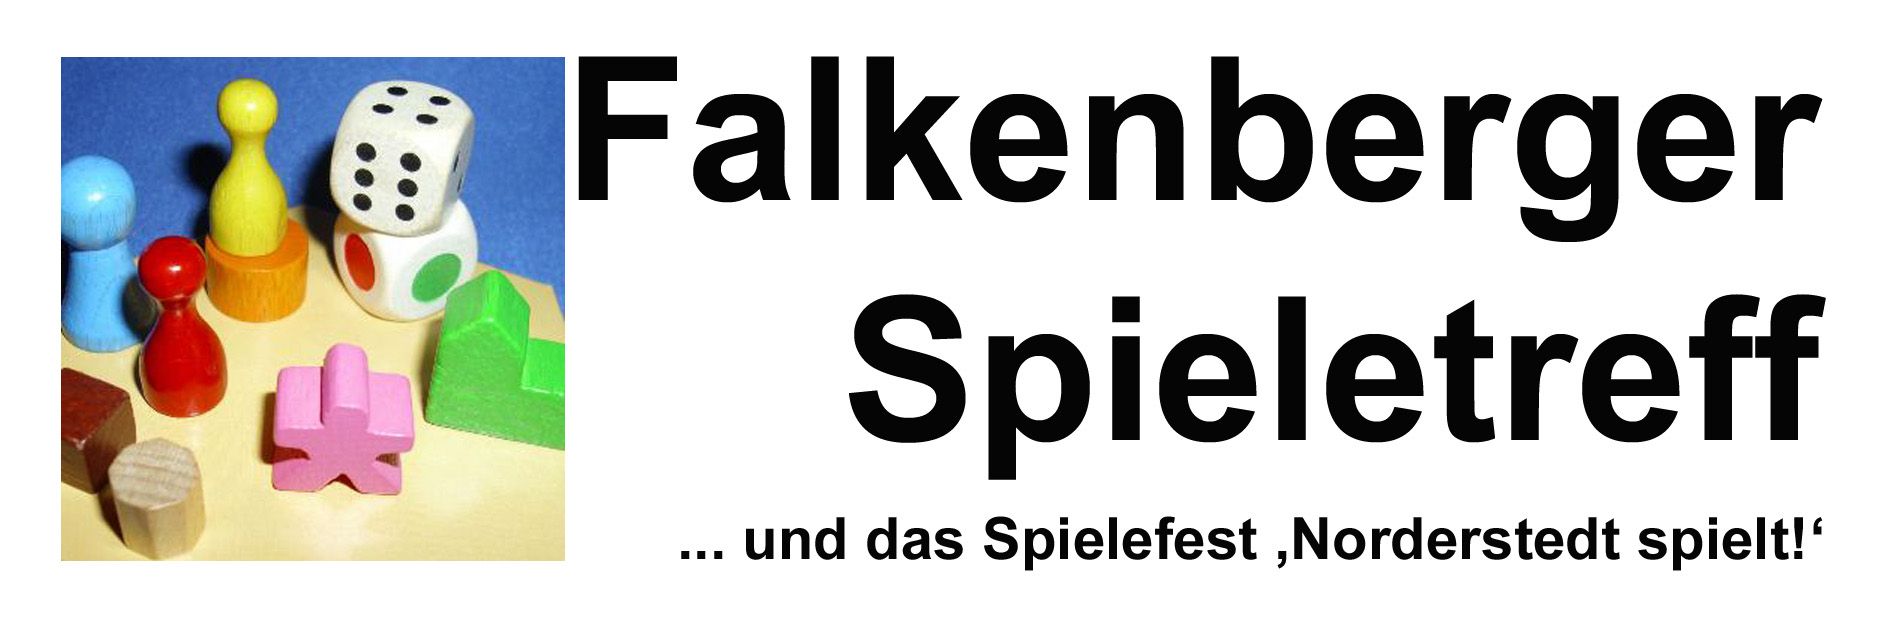 Falkenberger Spieletreff